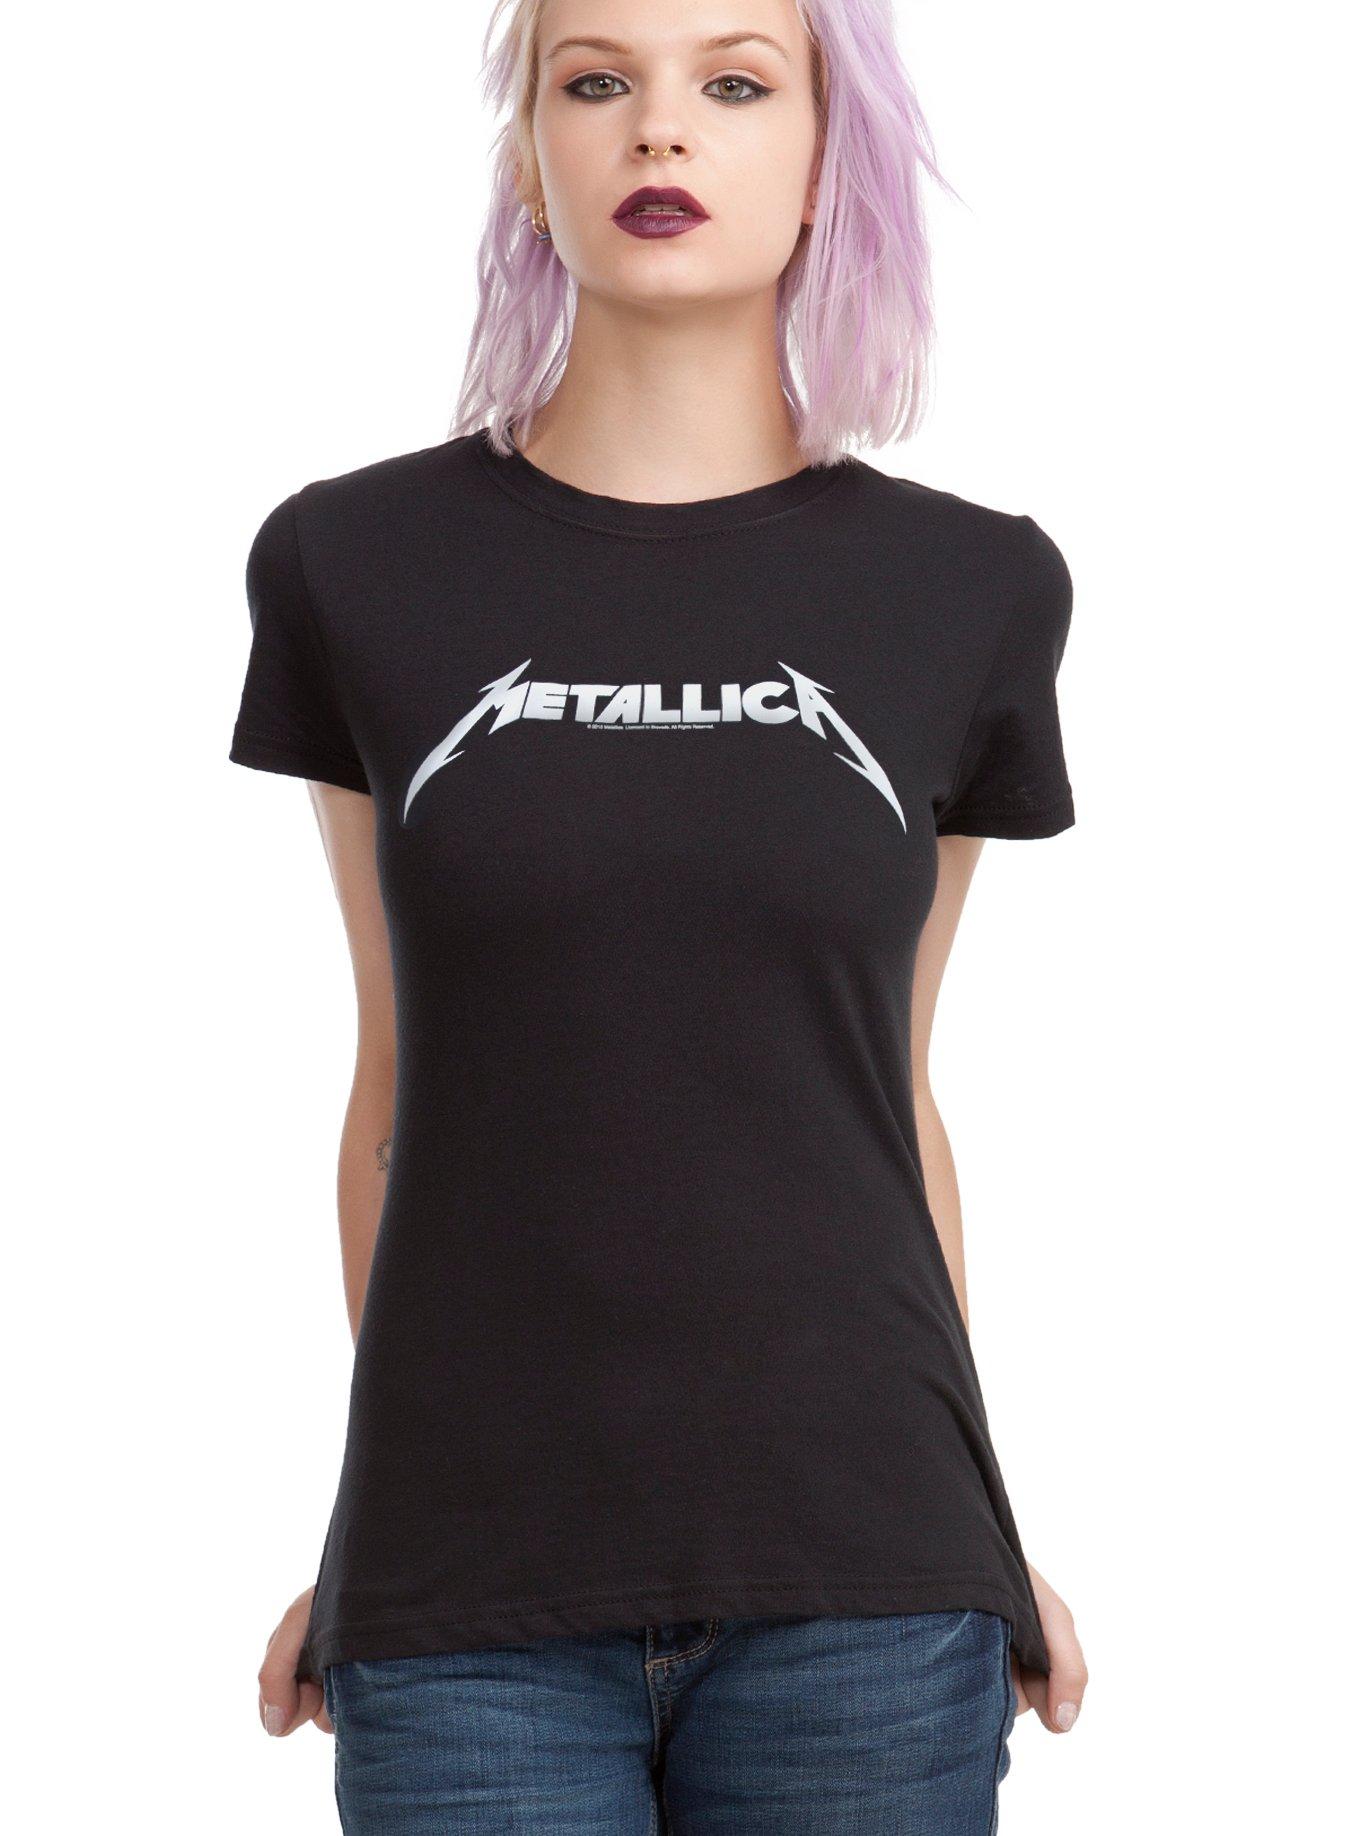 Metallica Logo Girls T-Shirt, BLACK, hi-res